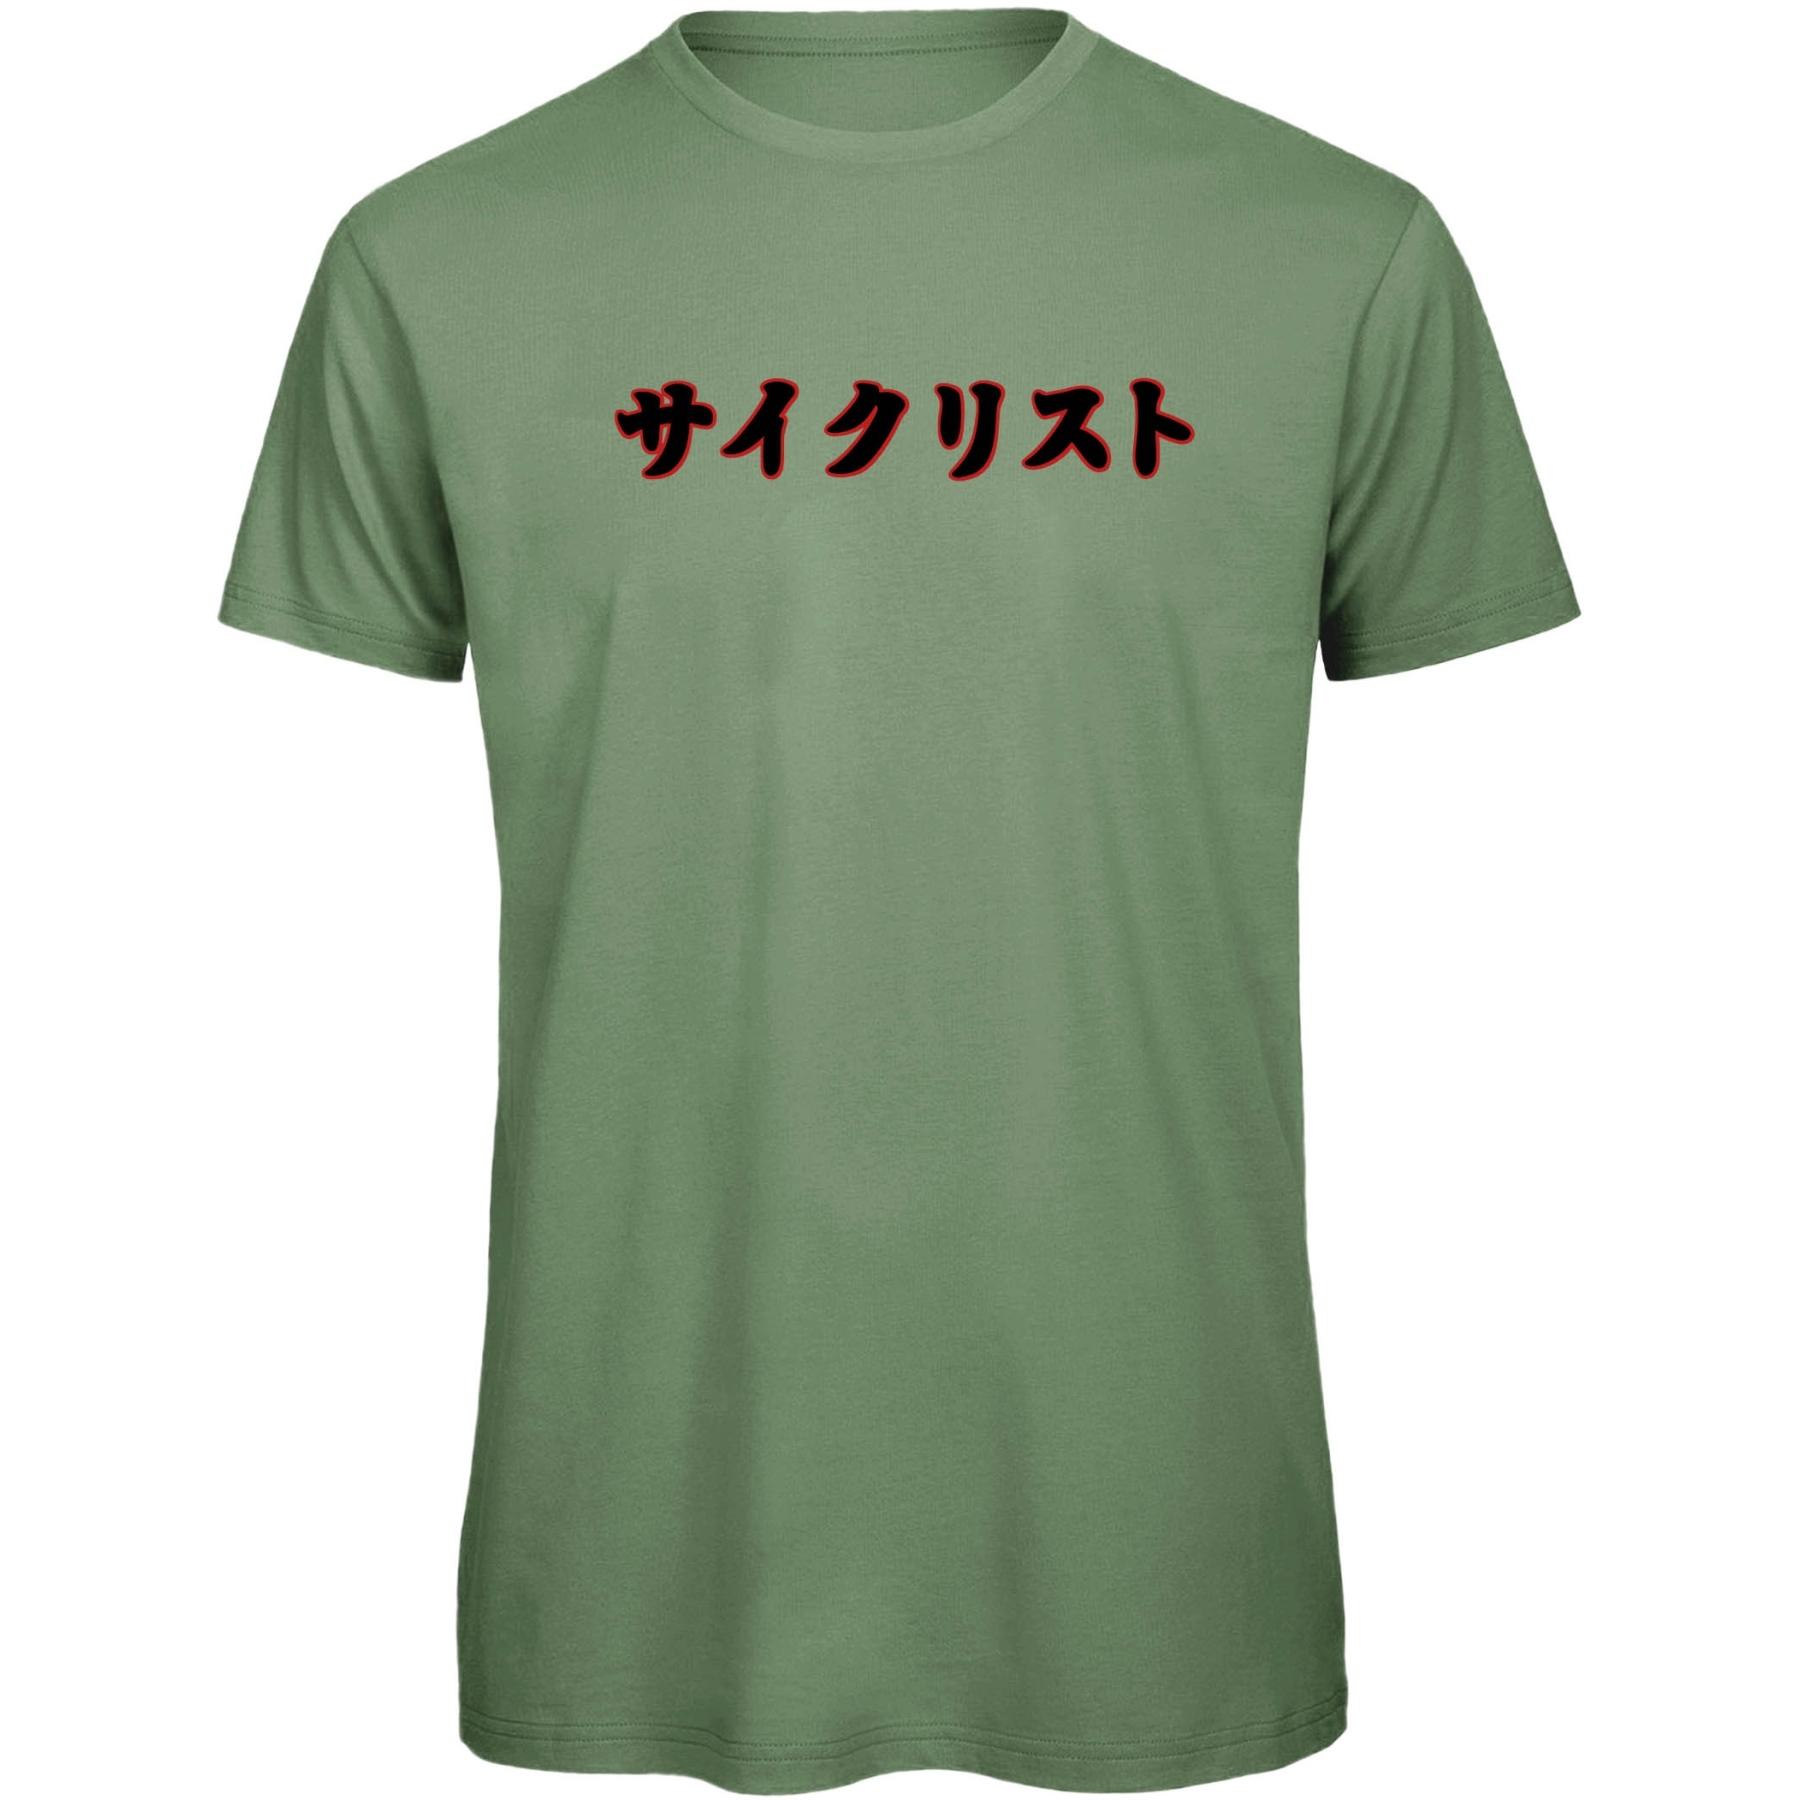 Imagen de RTTshirts Camiseta Bicicleta - Saikurisuto - verde claro